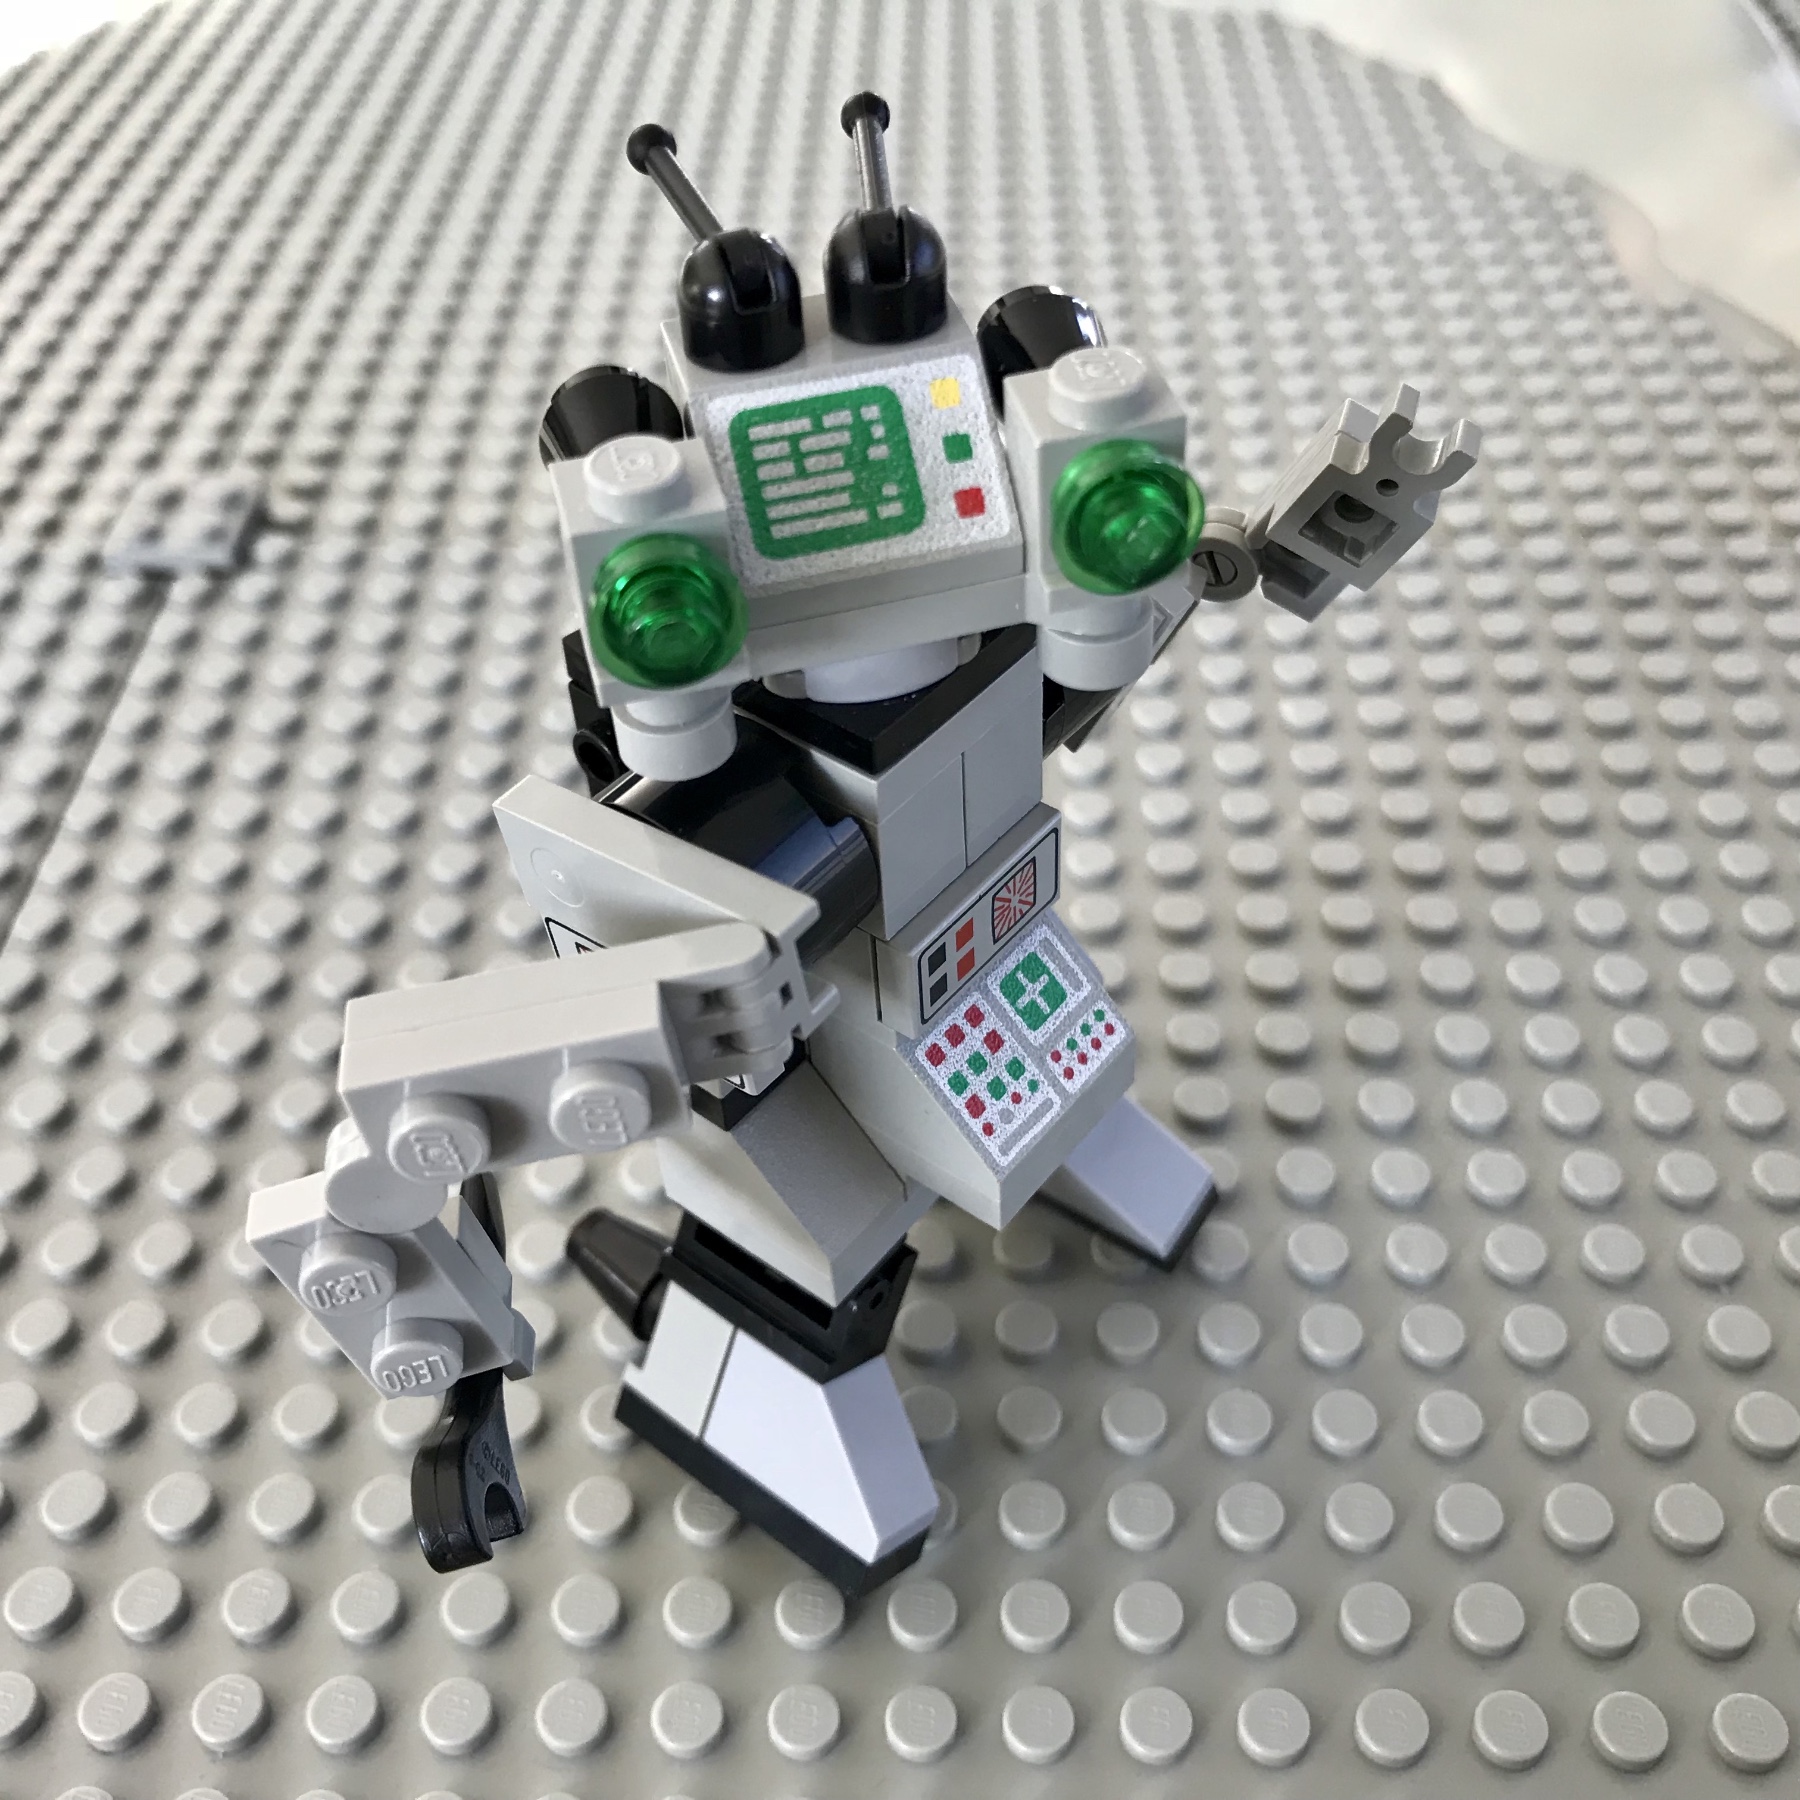 1498 Spy-Bot